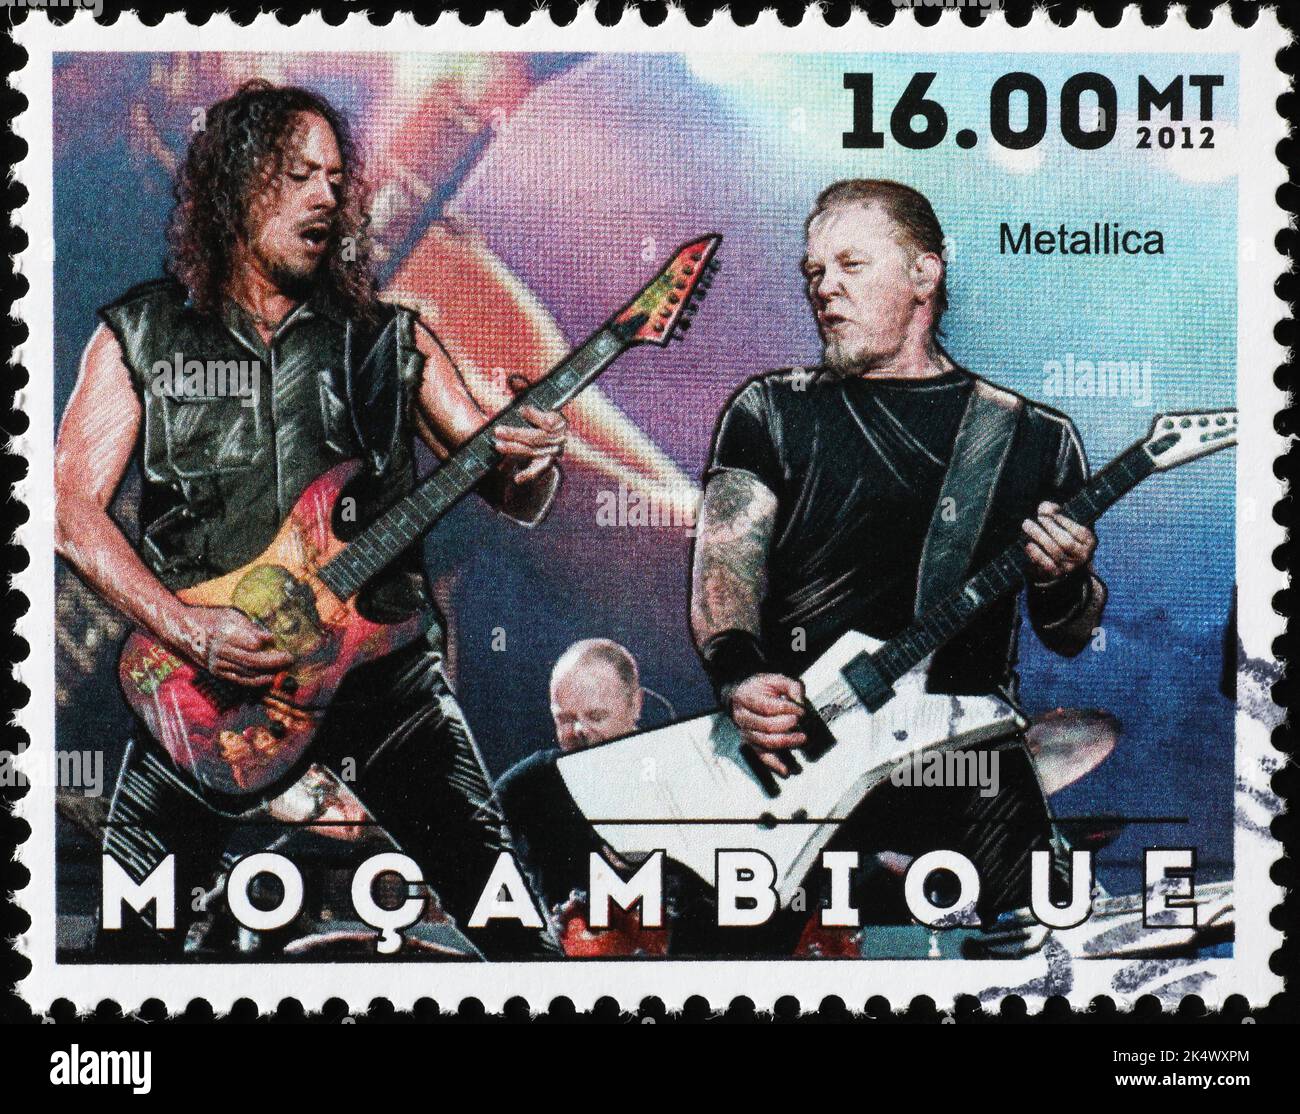 Metallica in concerto sul francobollo del Mozambico Foto Stock